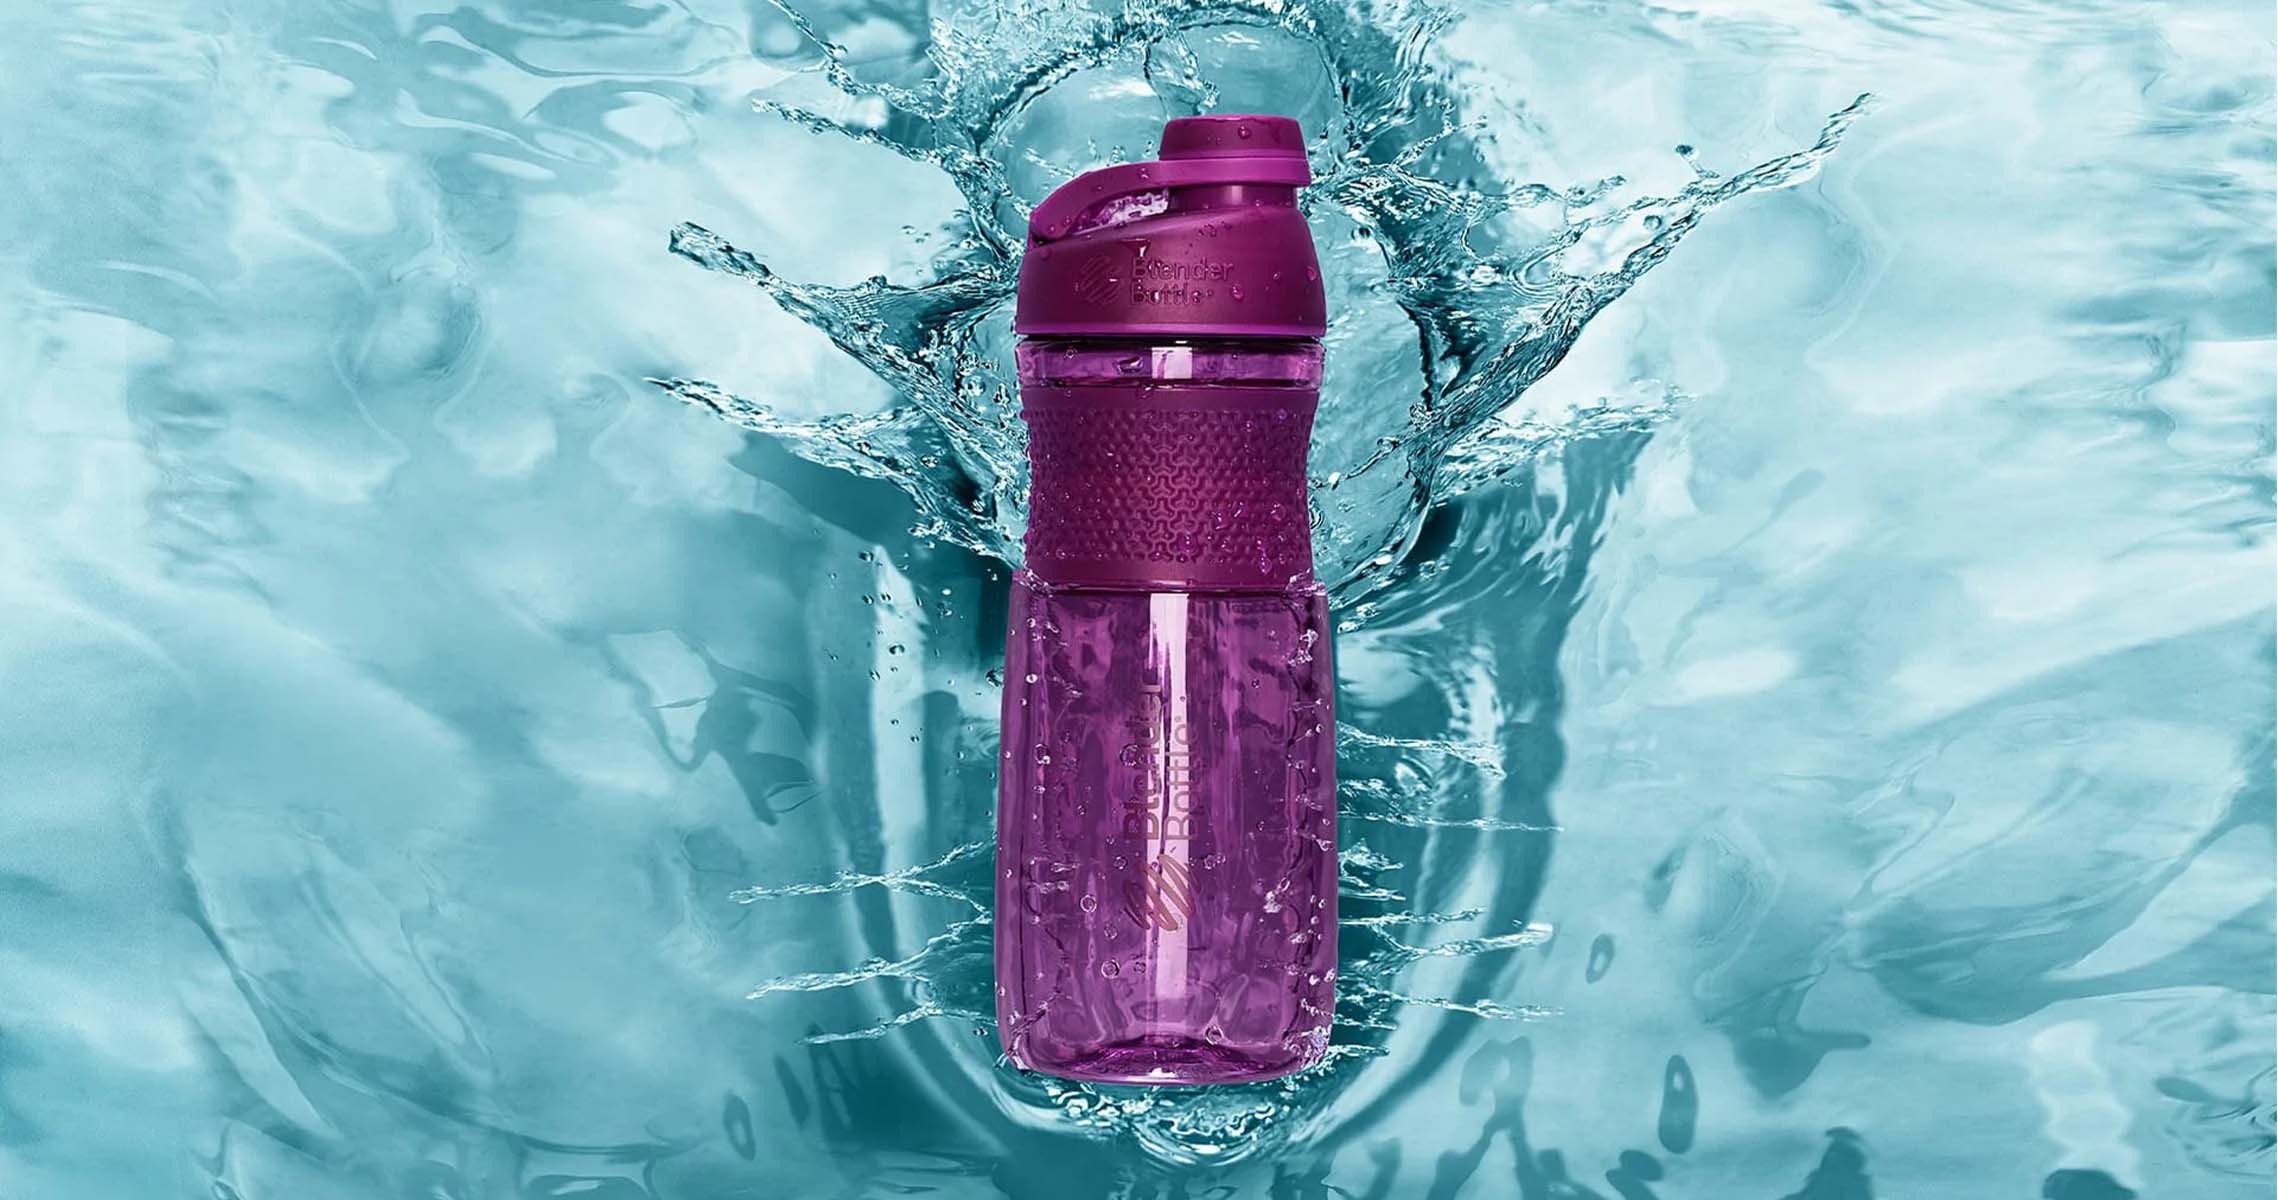 Blender Bottle Sport Mixer – Orgain